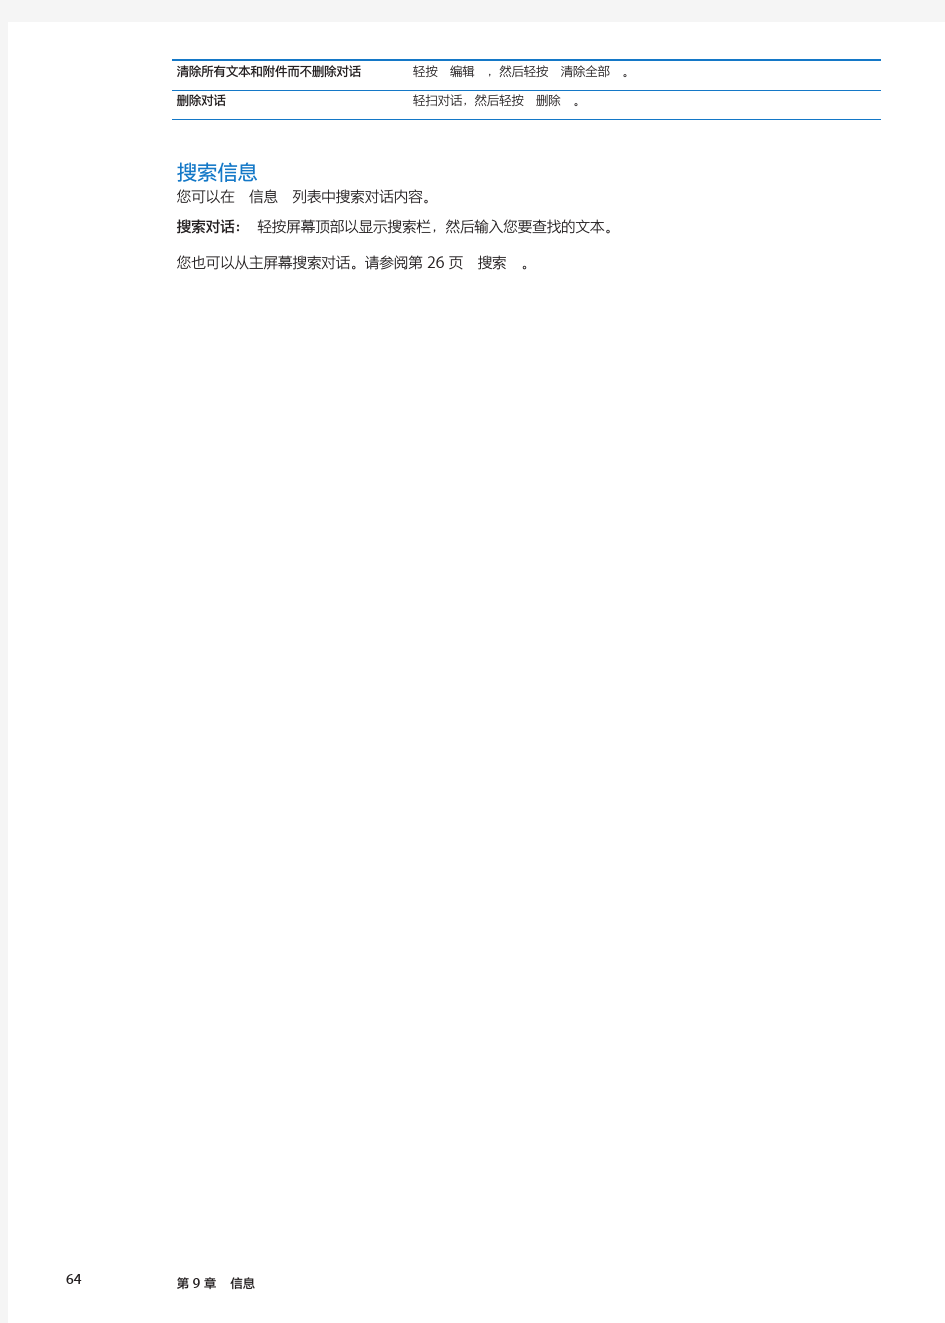 iphone5简体中文版说明书《(共152页)62-93页》第三包